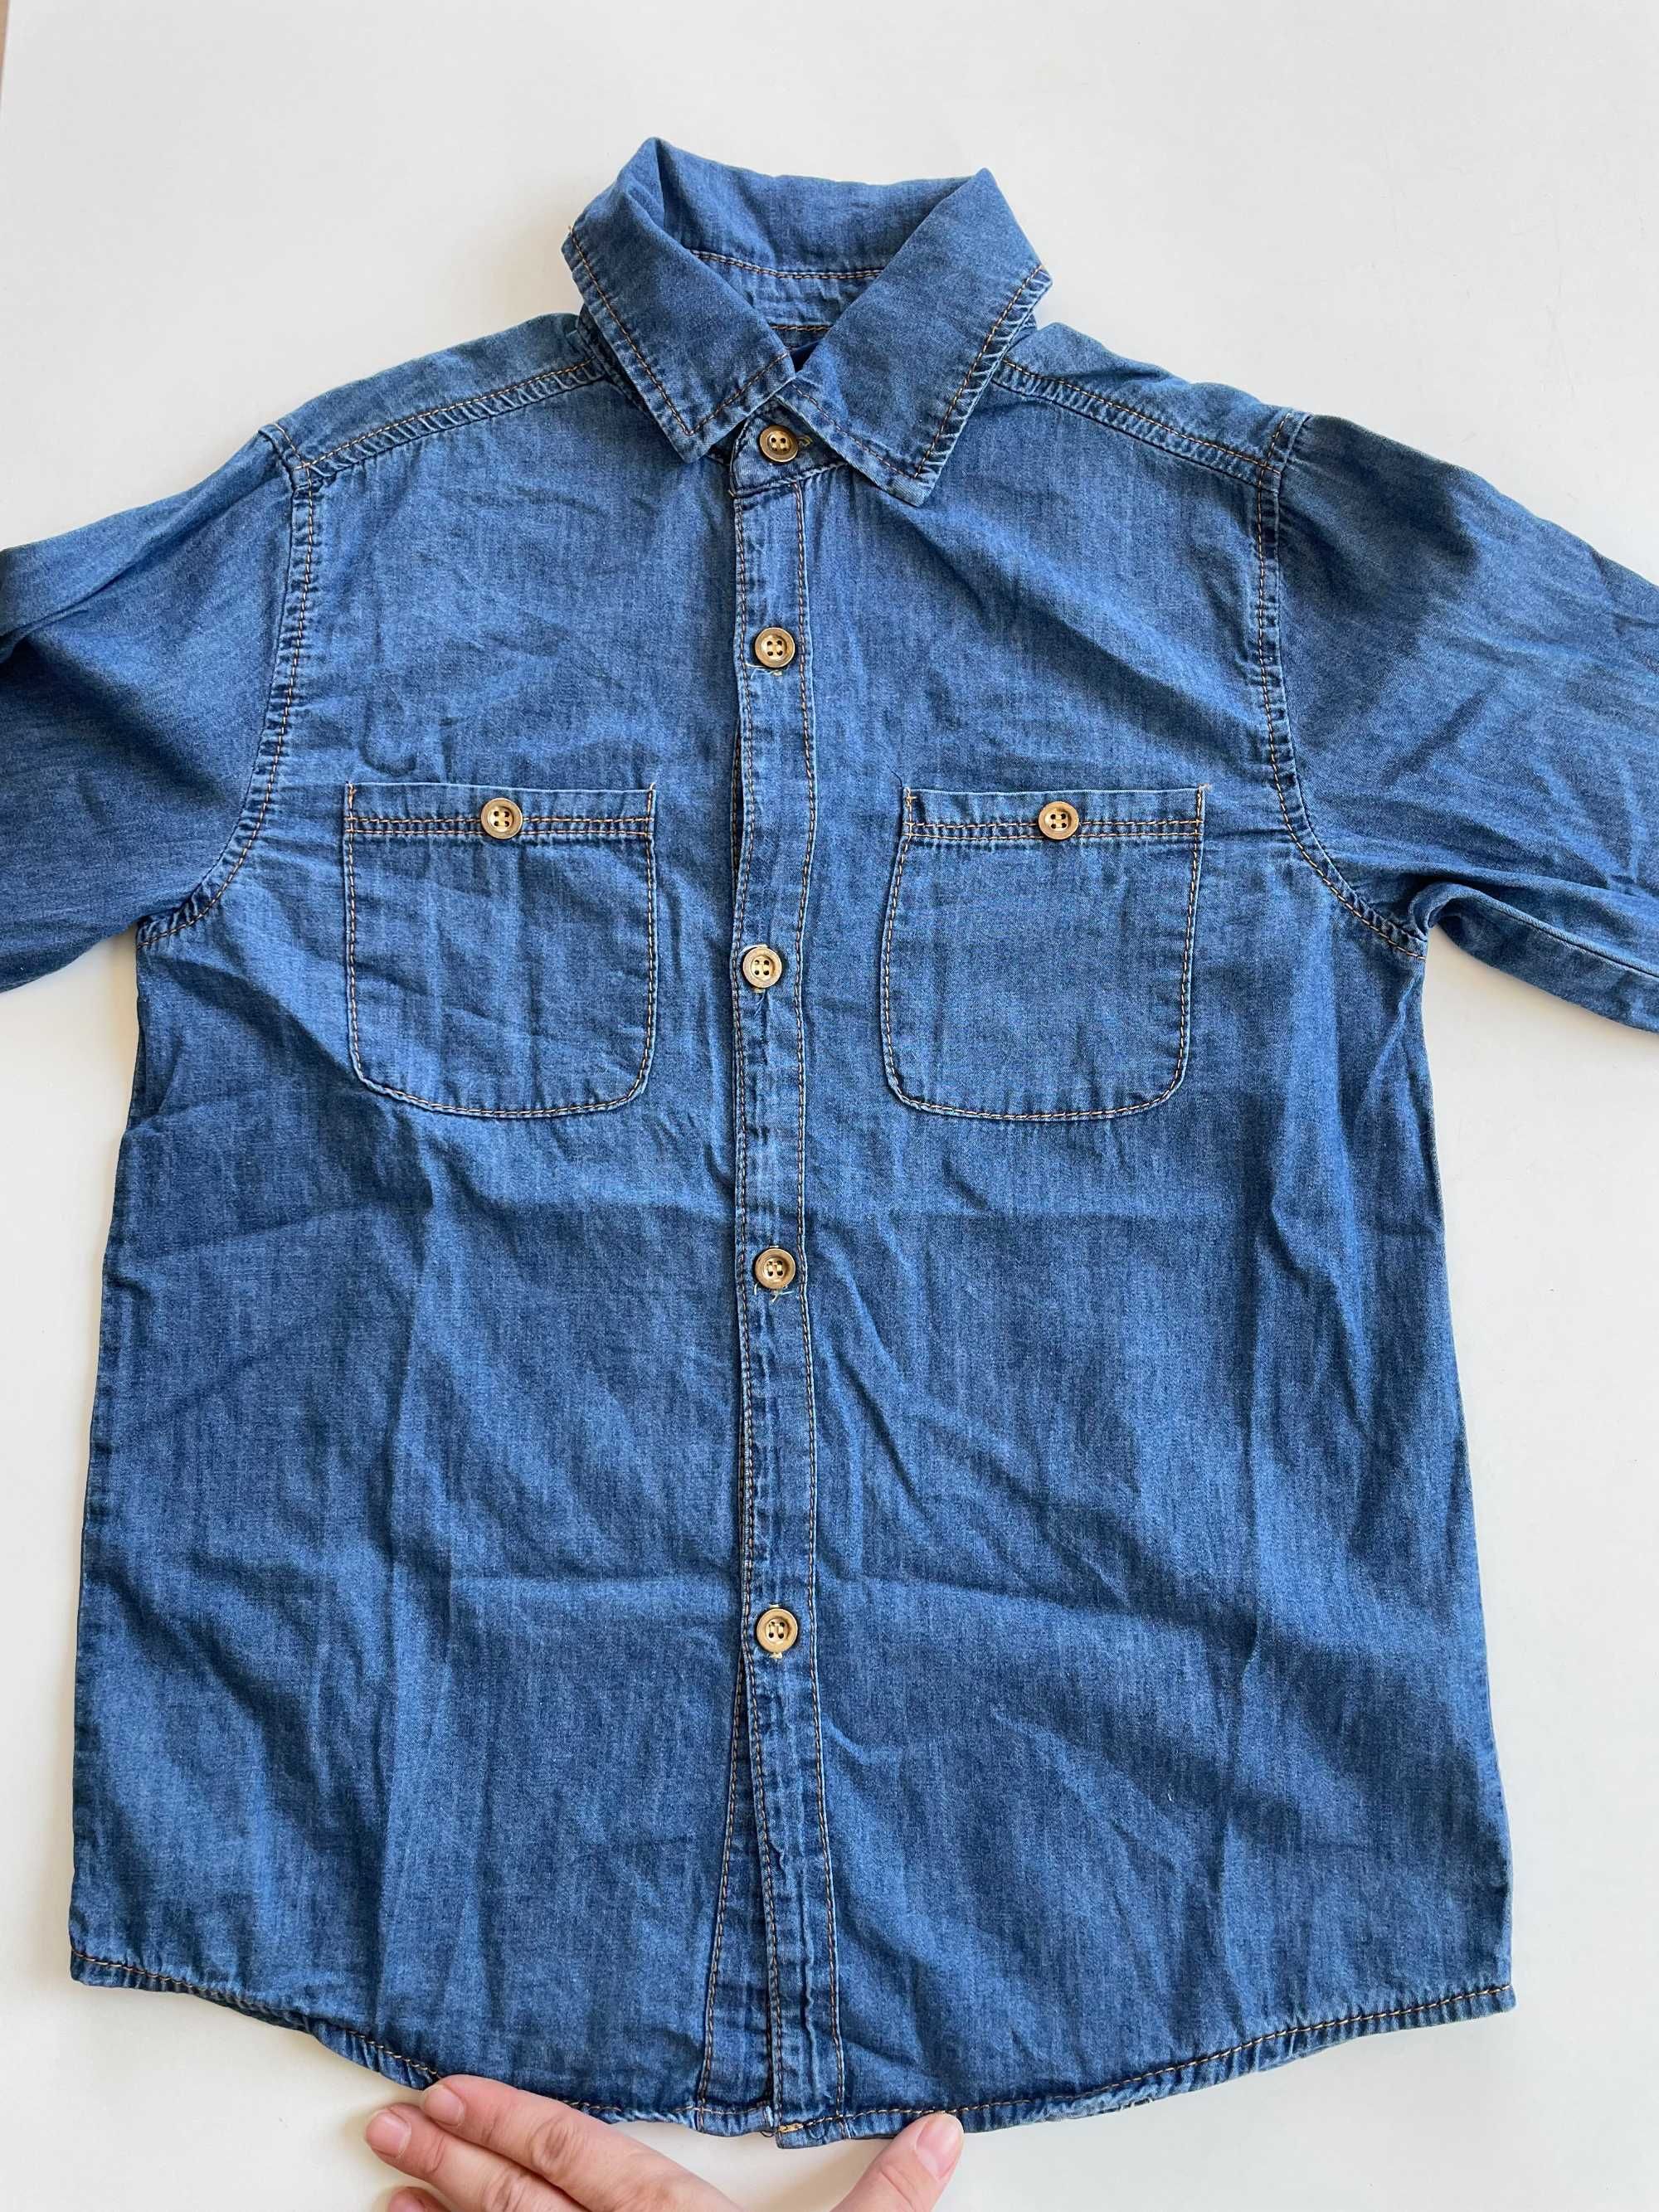 jeansowa koszula chłopięca Garwood 134/140 - bardzo miły materiał